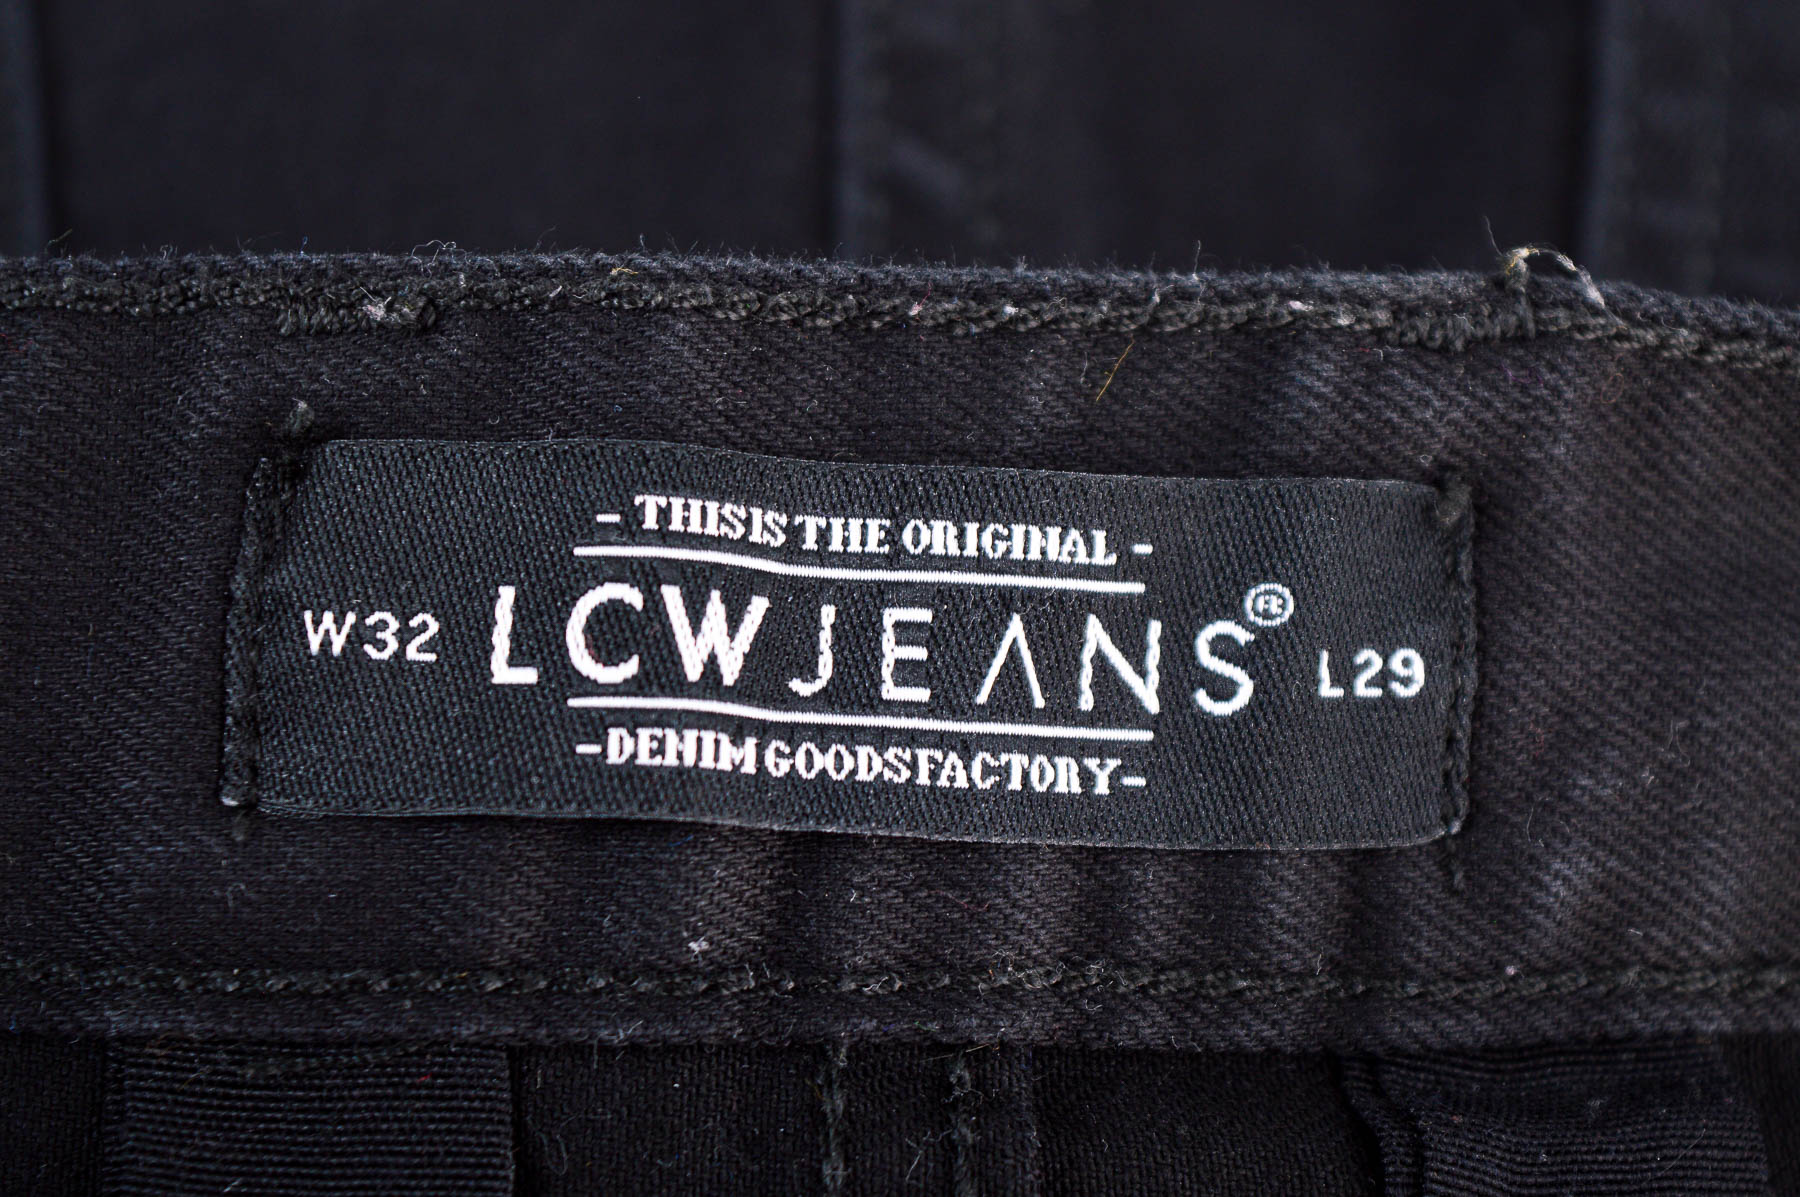 Men's jeans - LCW Jeans - 2